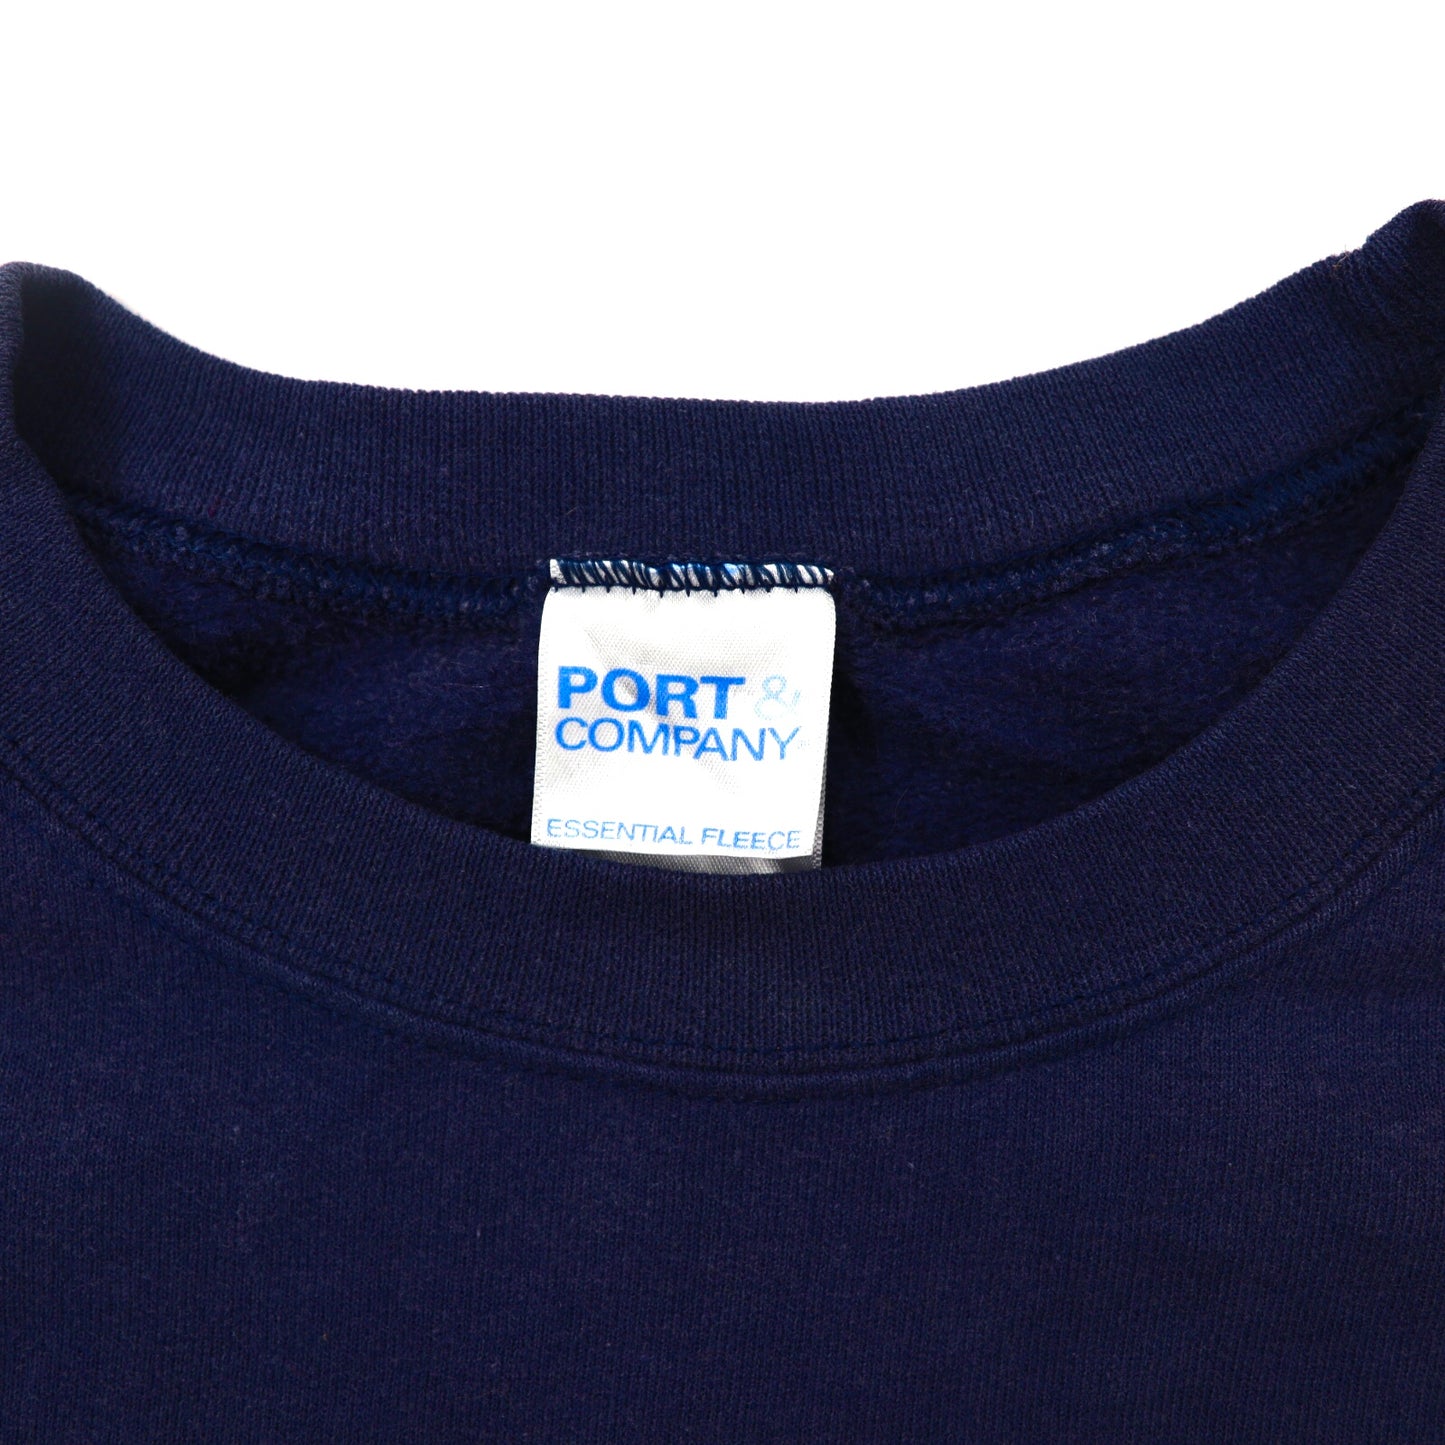 PORT & COMPANY クルーネックスウェット S ネイビー コットン SJB刺繍 90年代